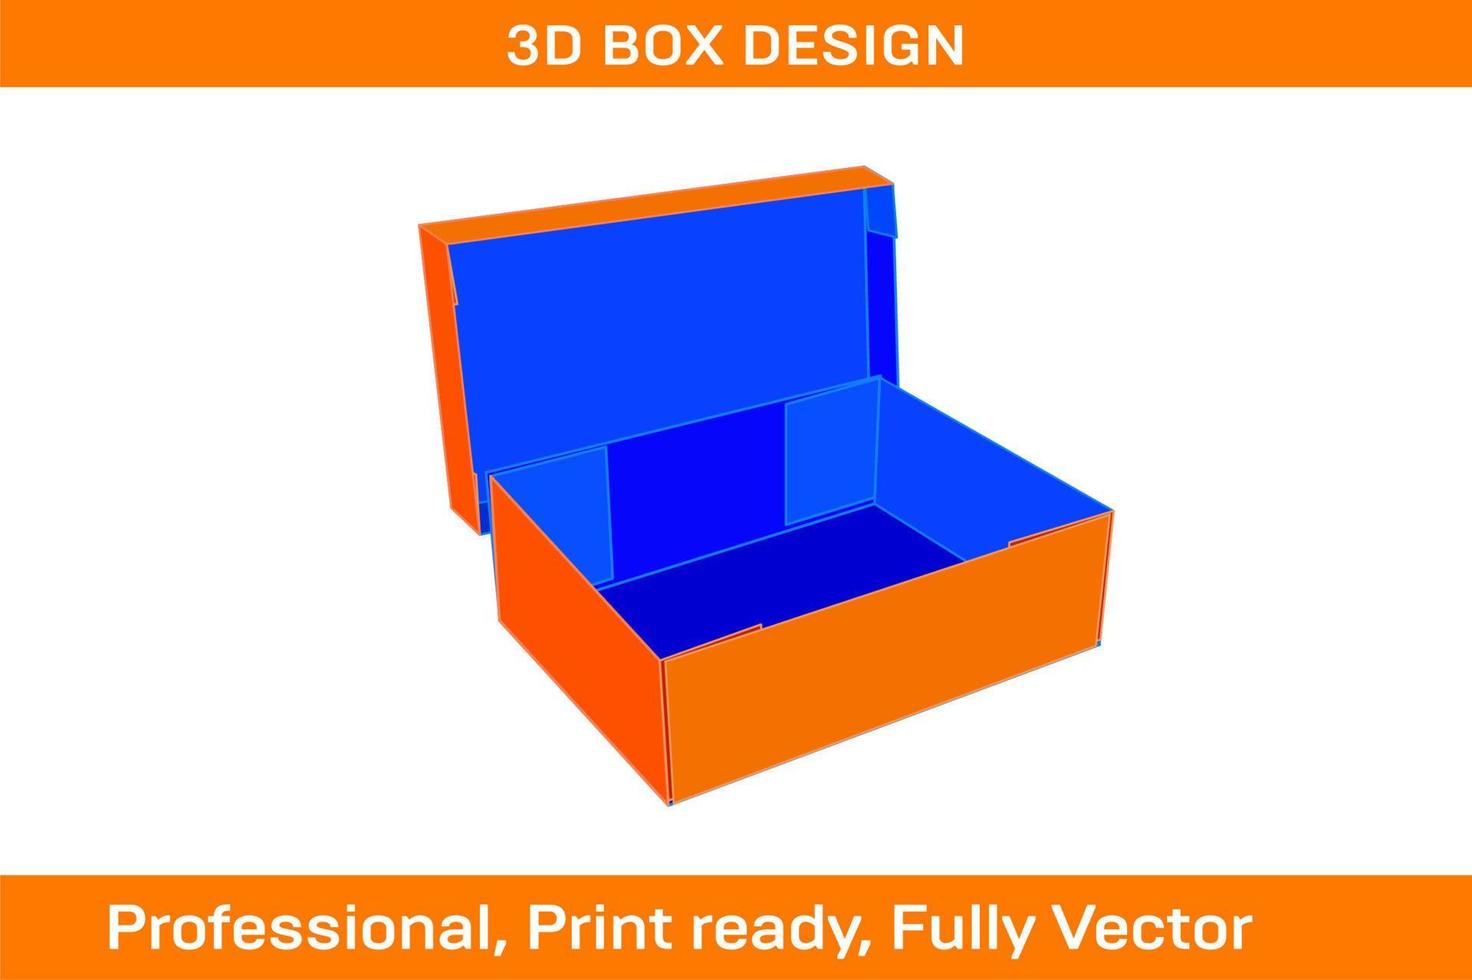 der Größe veränderbar gewellt Karton Box Standard Box 3d machen und Dieline Vorlage vektor